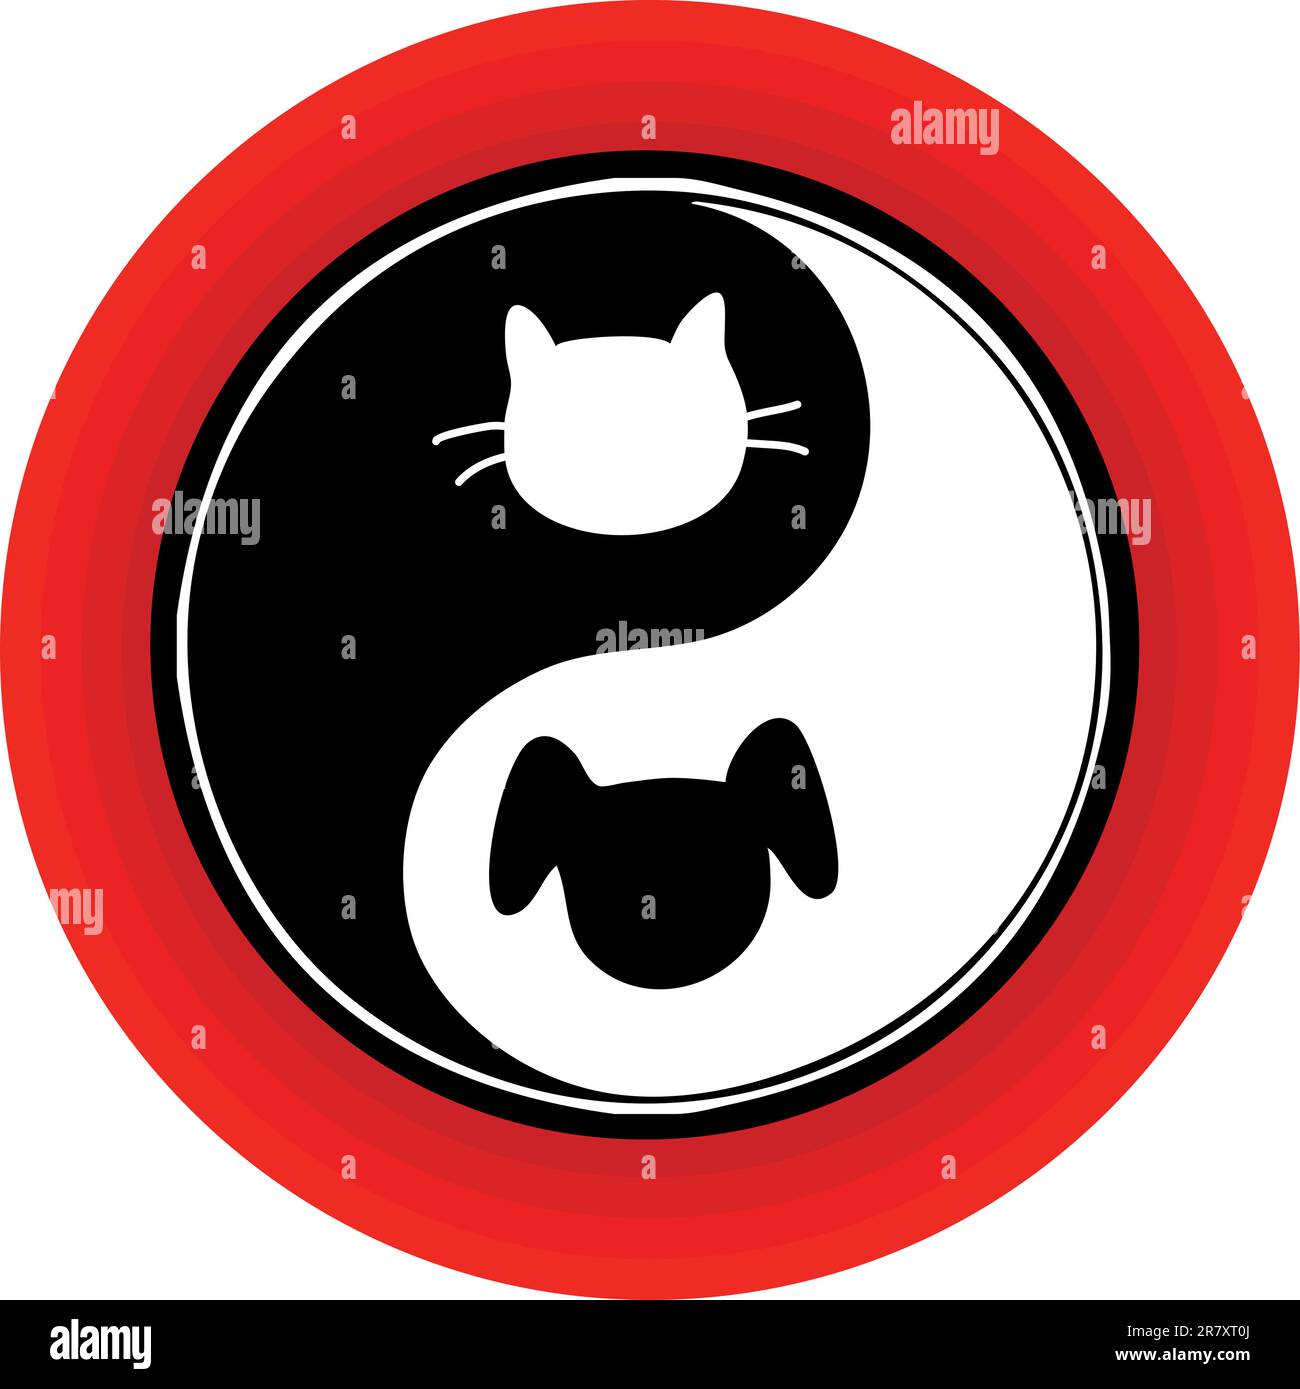 Un simbolo yin yang atipico all'interno di un cerchio rosso, con un gatto e un cane impegnati nell'inseguimento senza fine. Illustrazione Vettoriale